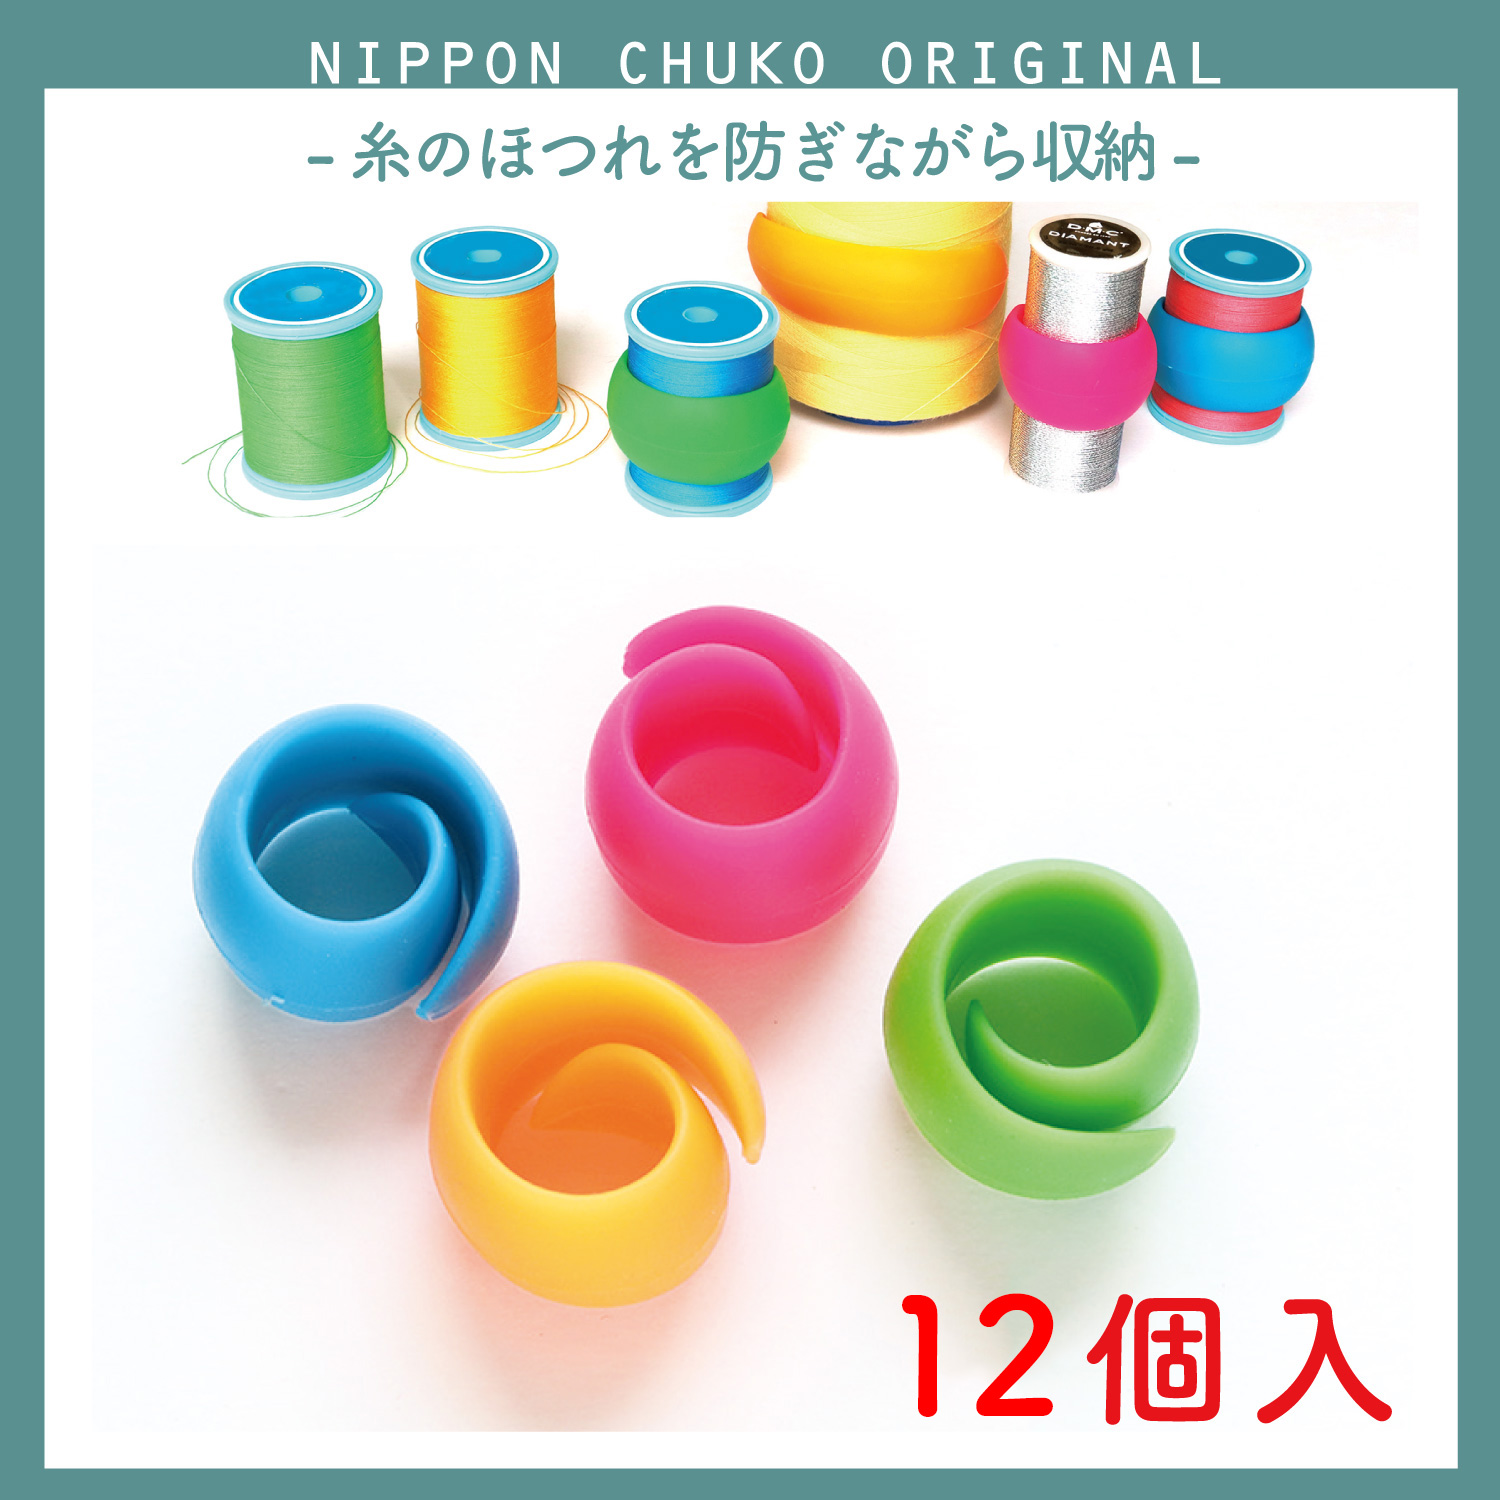 NI-02437-3 ボビン糸ホルダー 4色各1個×3袋 計12個 (セット)